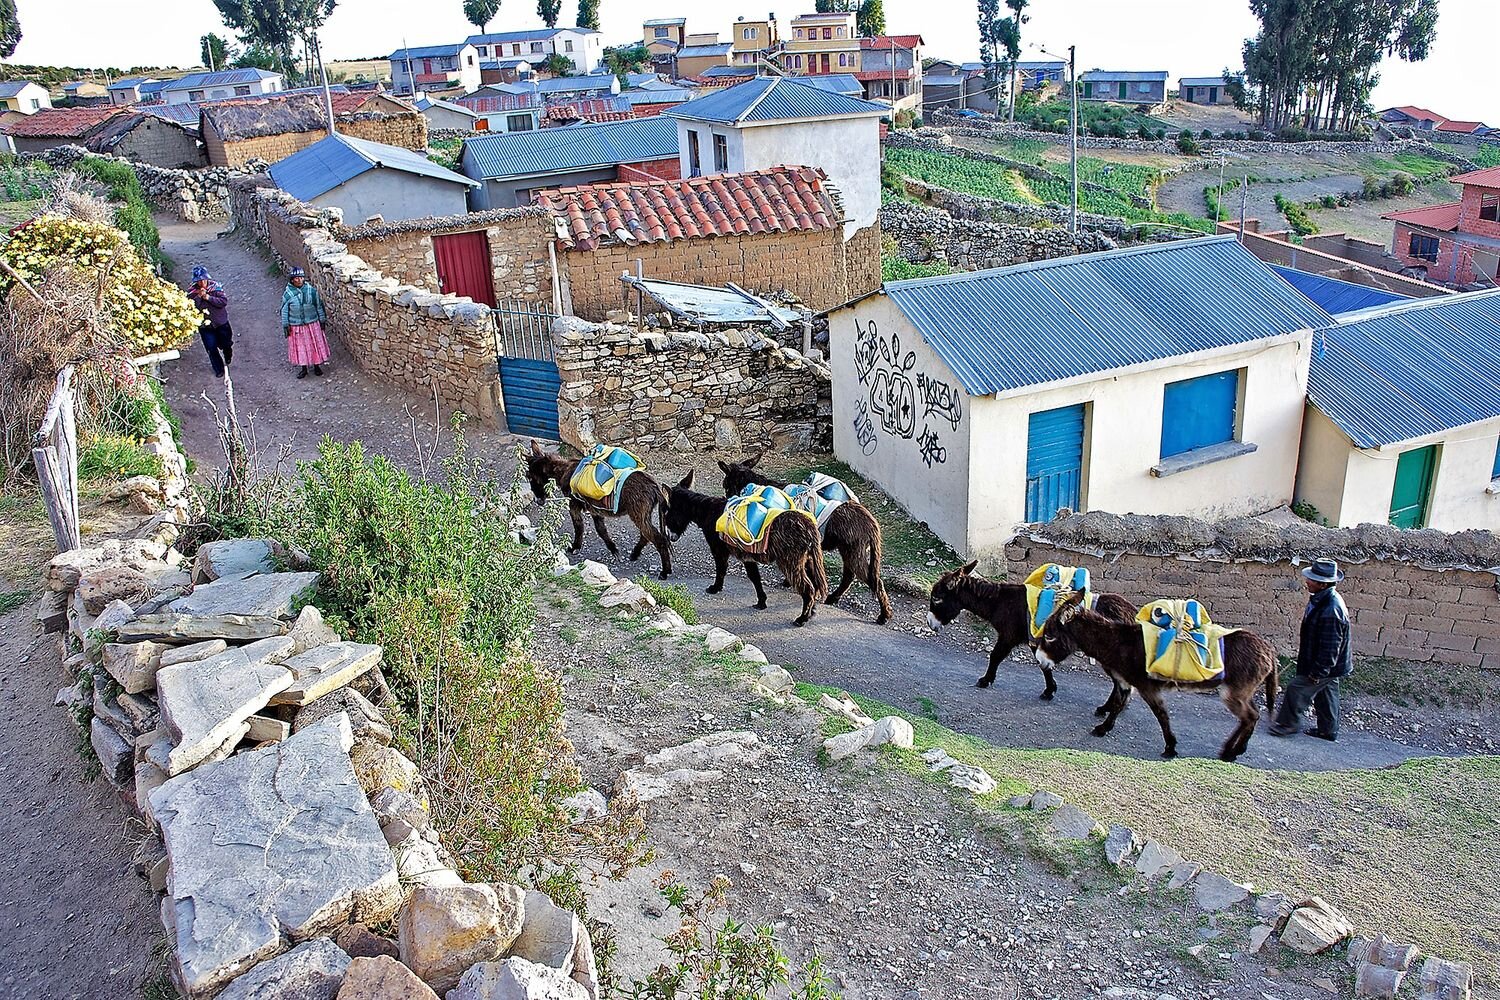  A scene of everyday life in Isla del Sol. Bolivia 